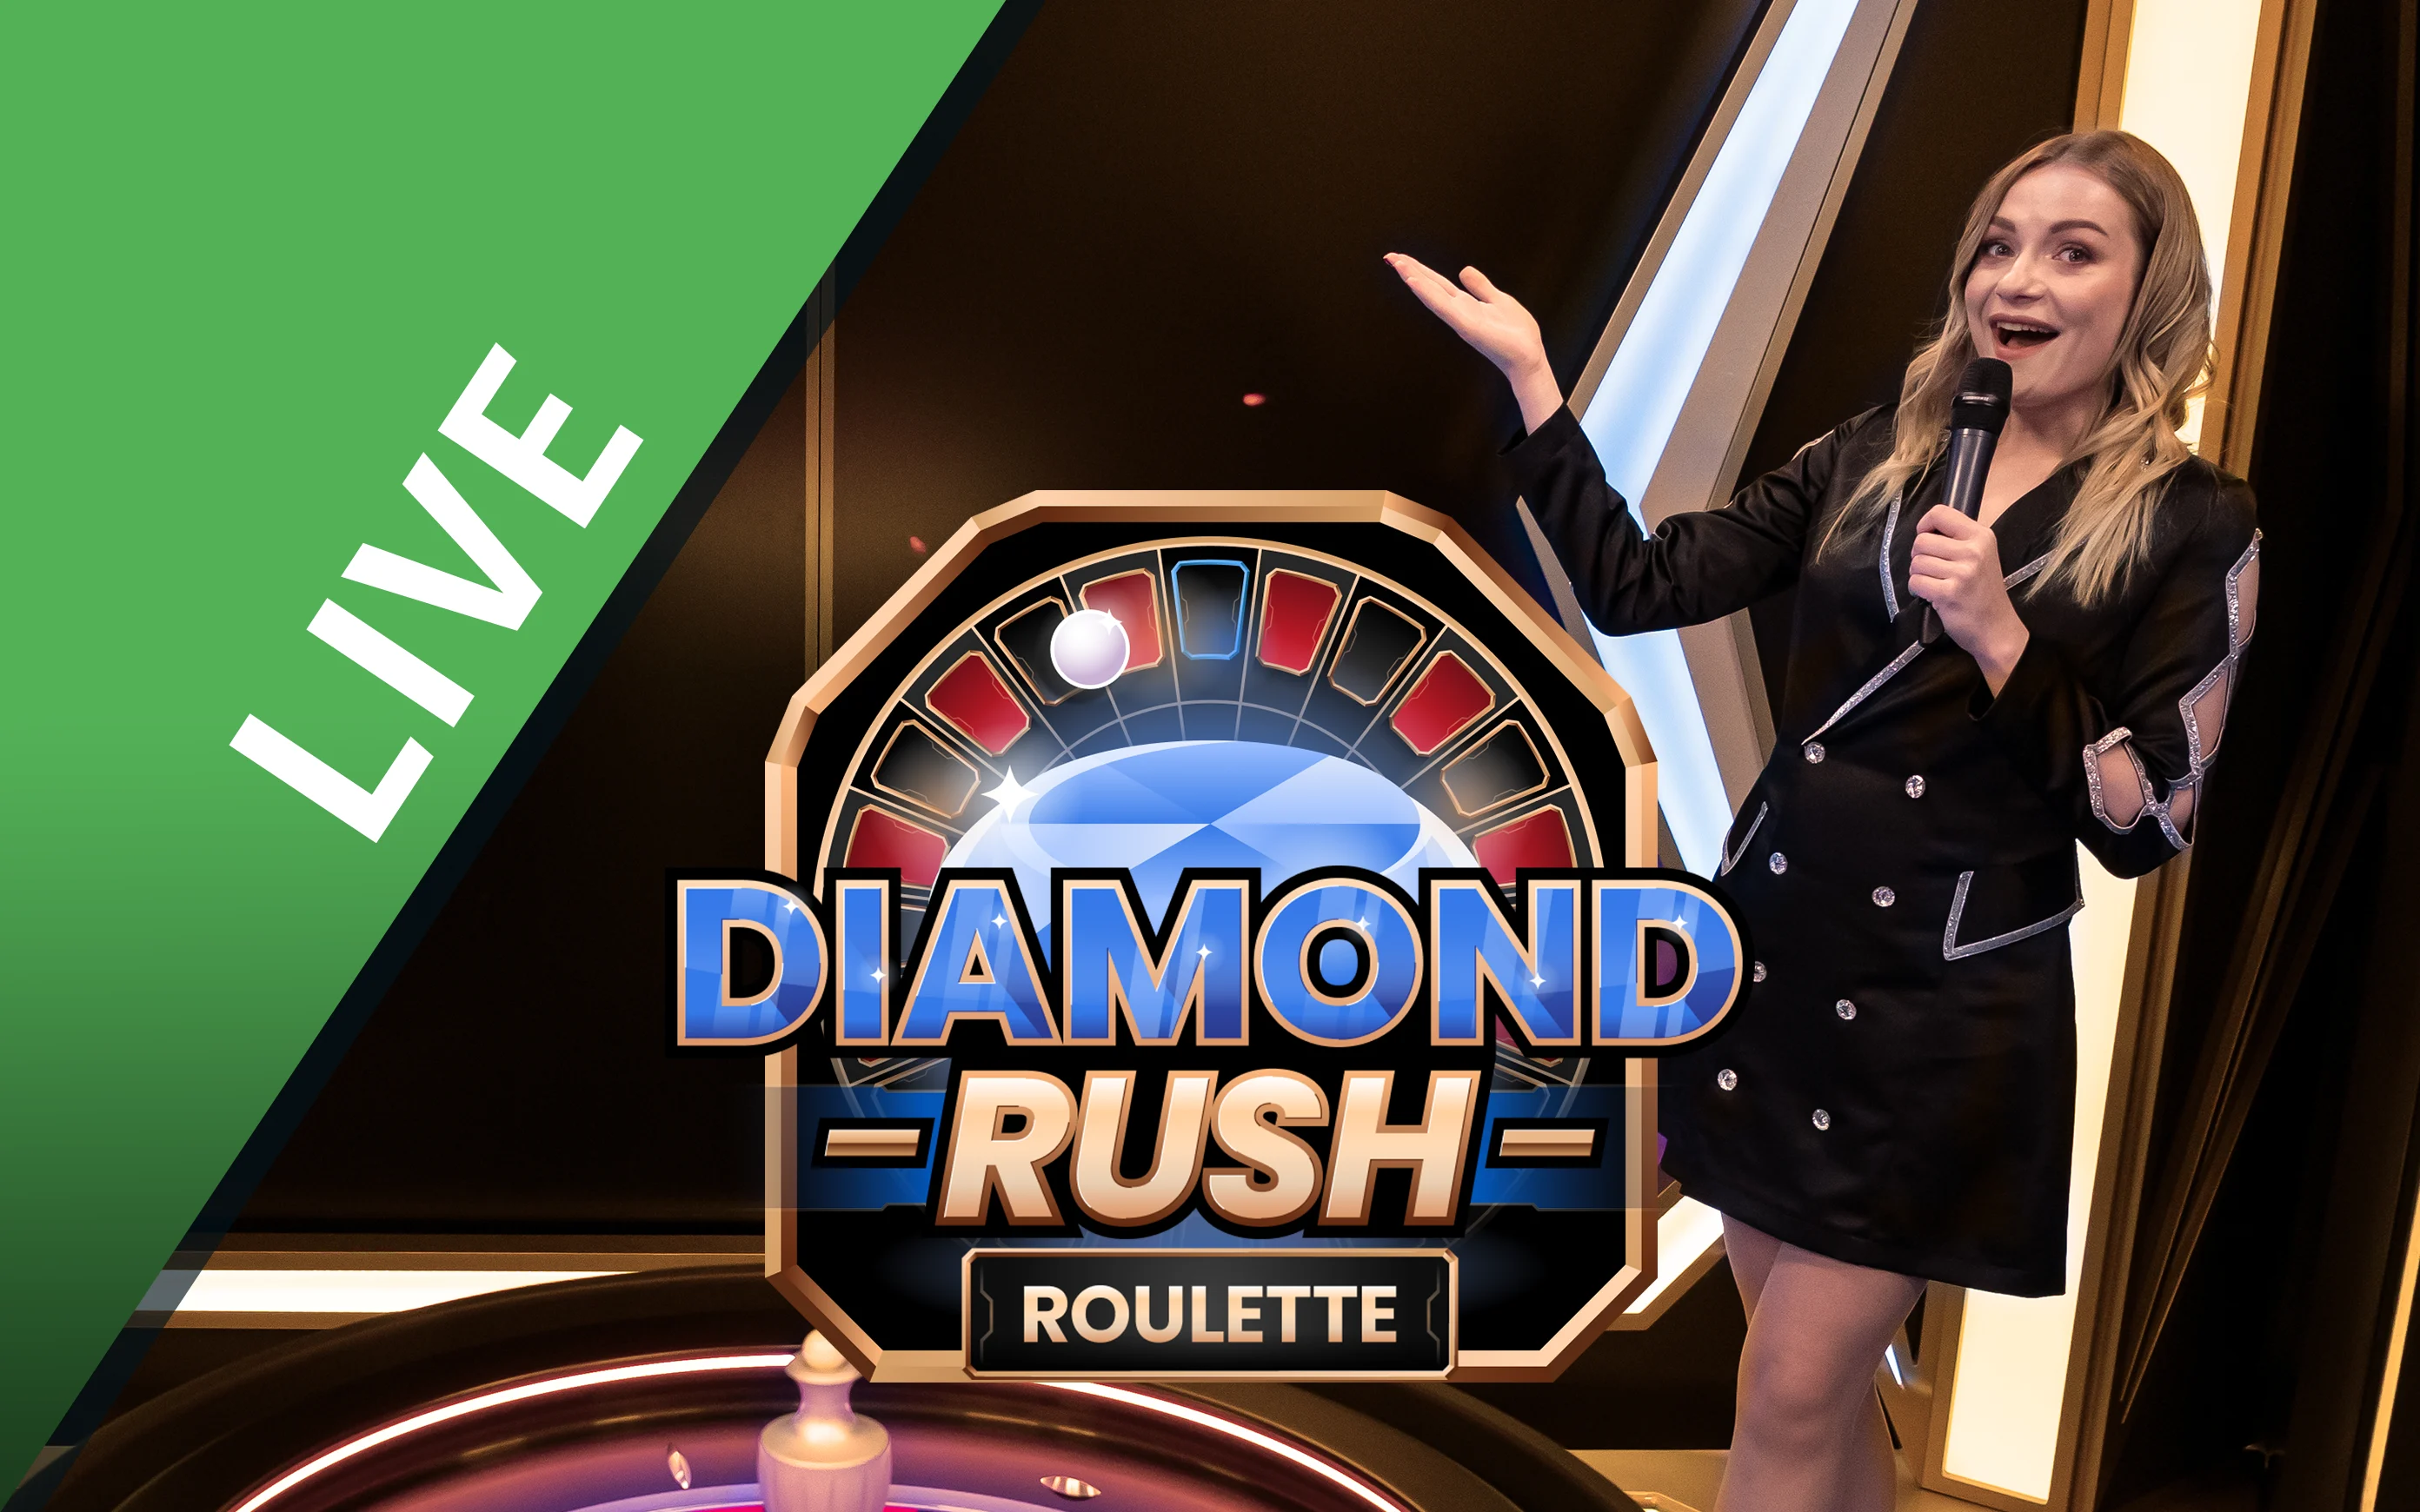 Jogue Diamond Rush Roulette no casino online Starcasino.be 